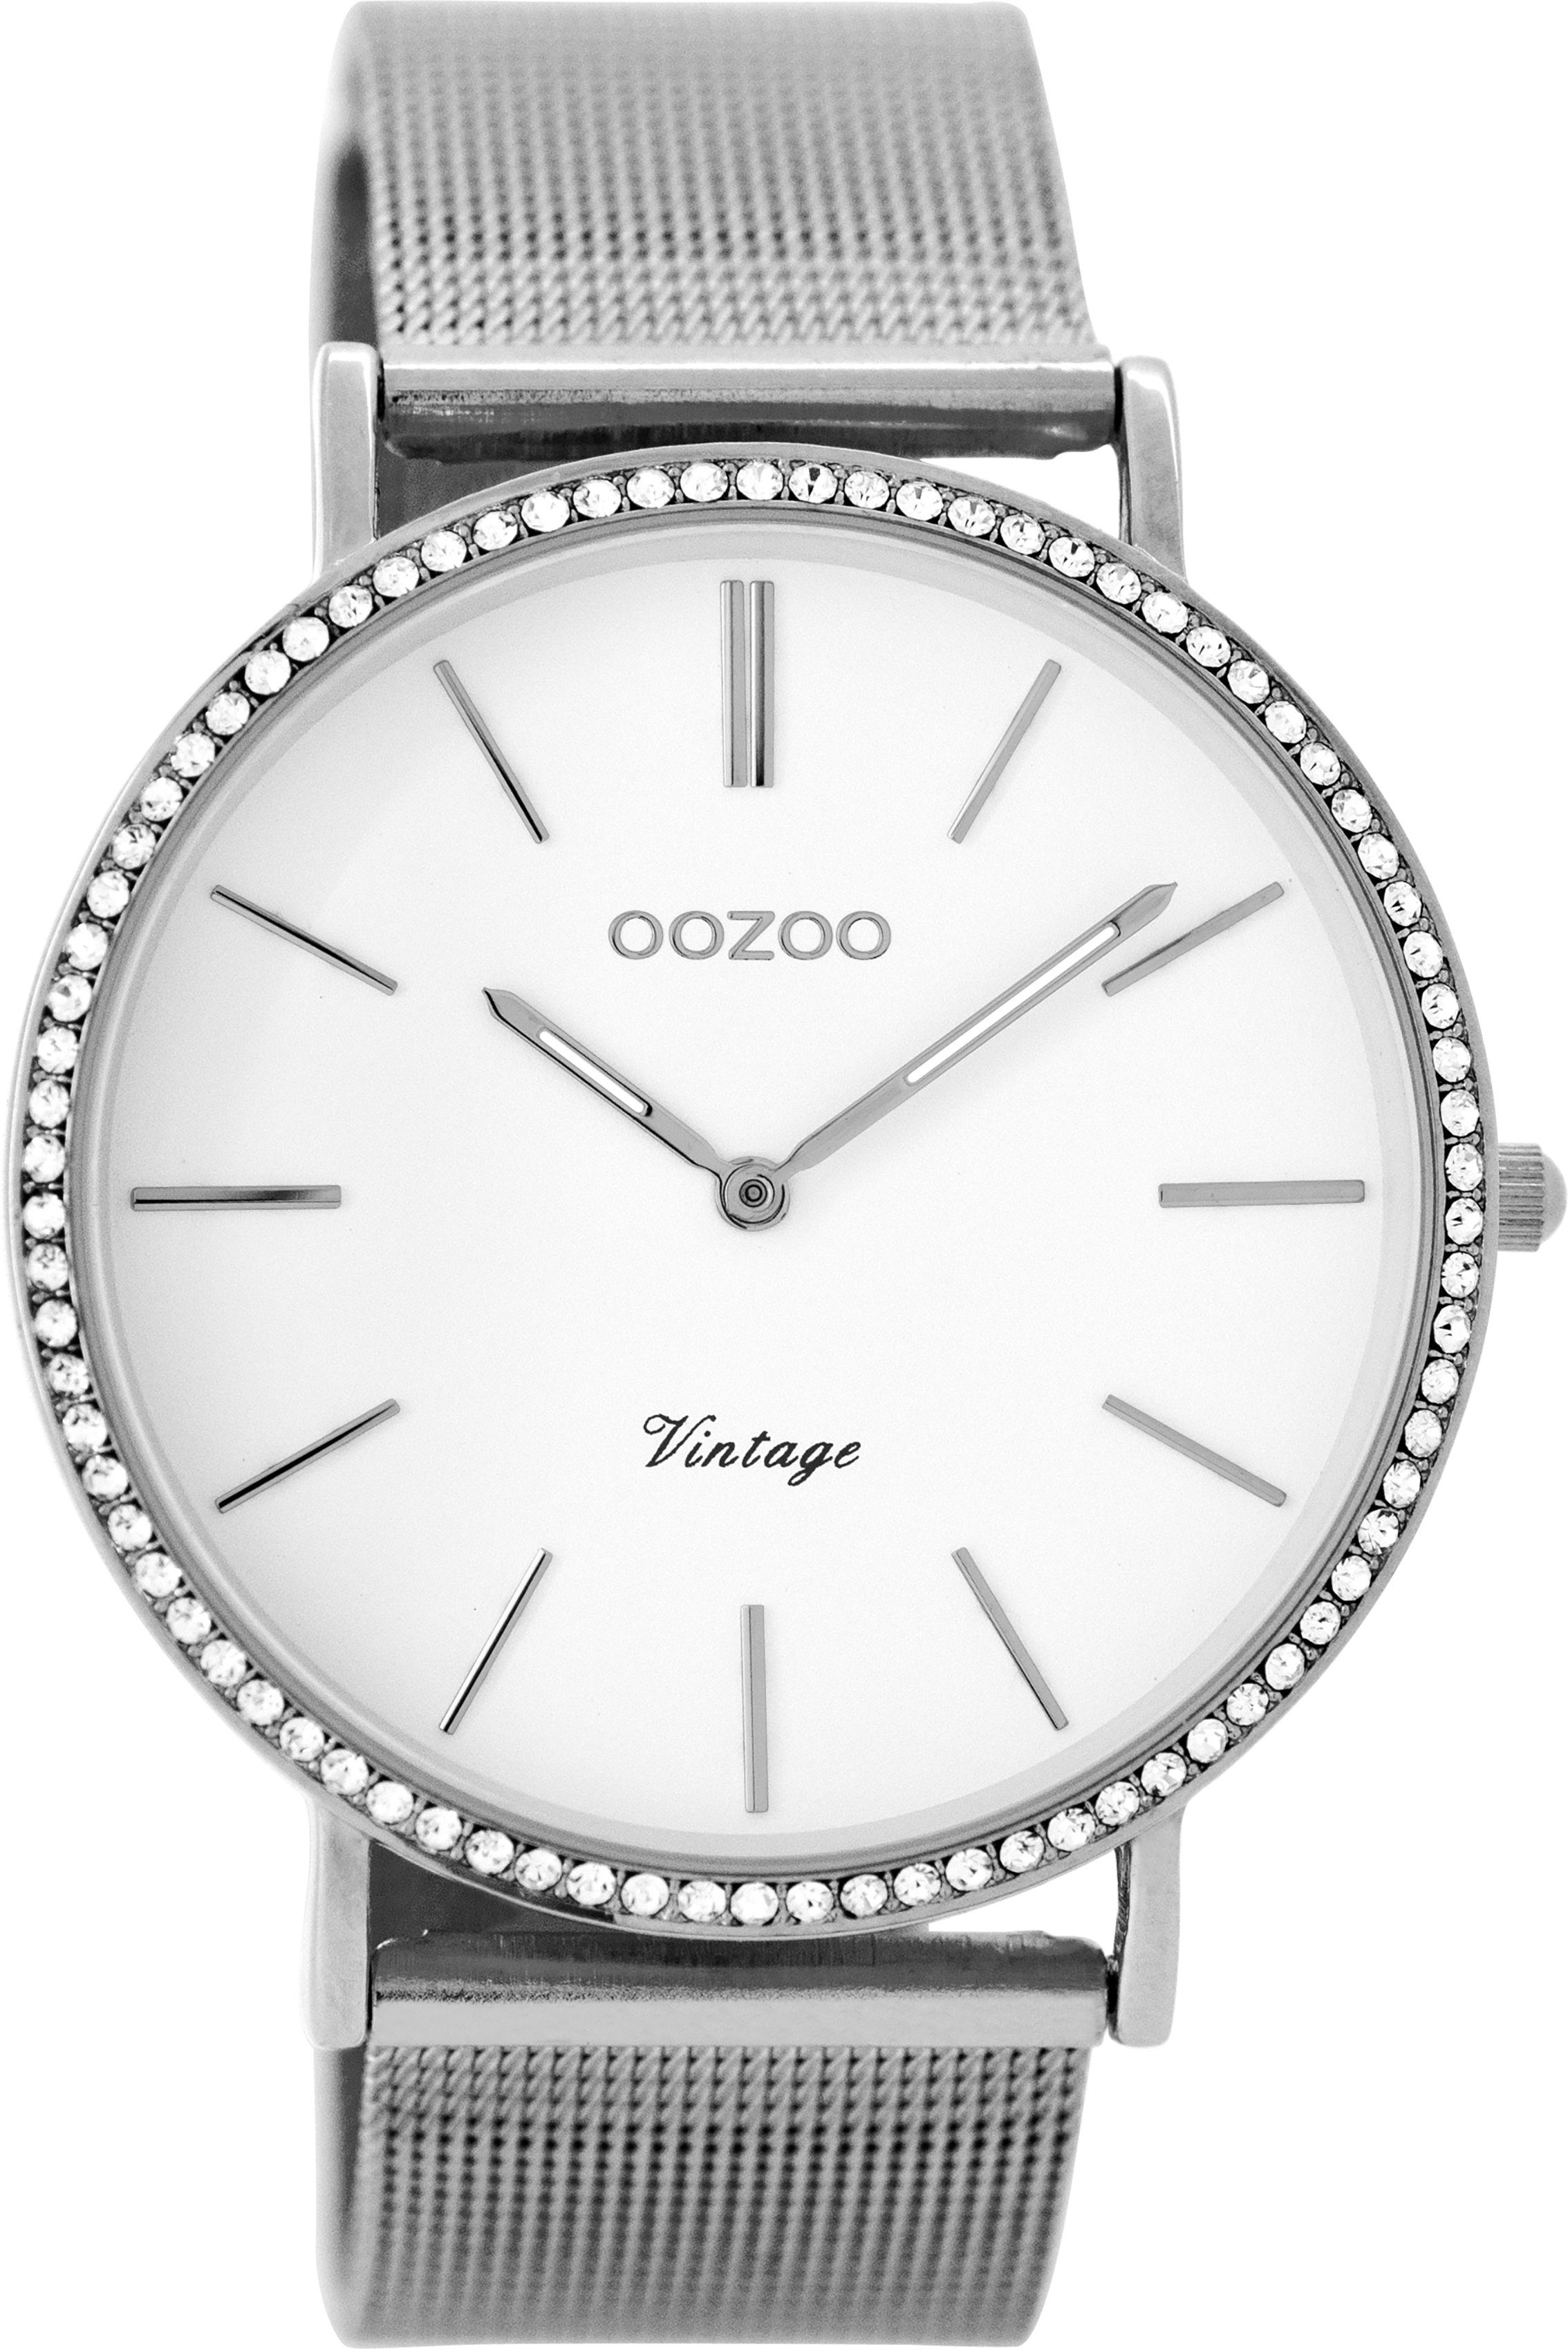 OOZOO Quarzuhr C8890, Armbanduhr, Damenuhr